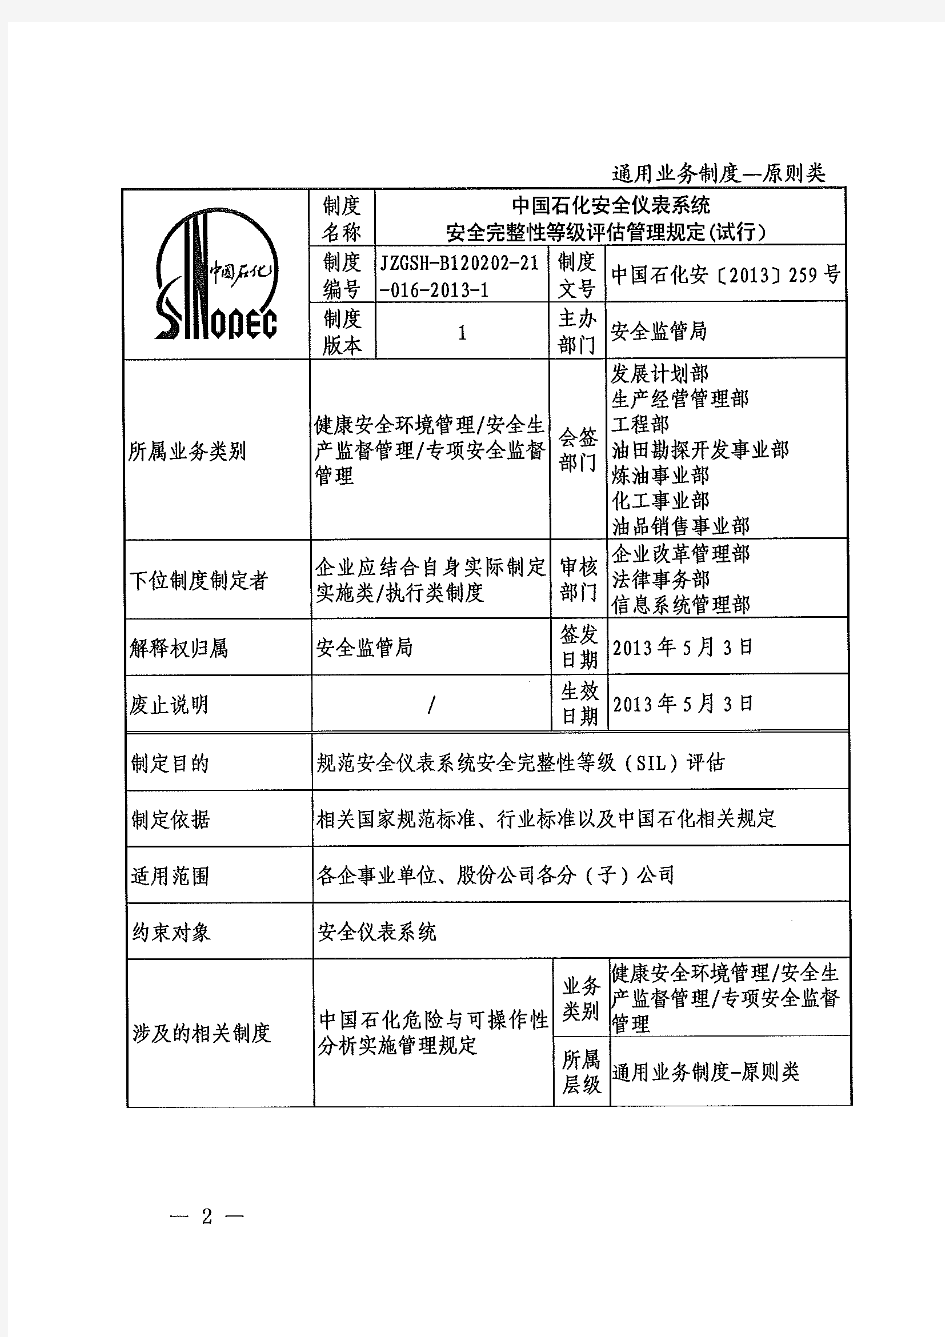 关于印发《中国石化安全仪表系统安全完整性等级评估管理规定(试行)》的通知